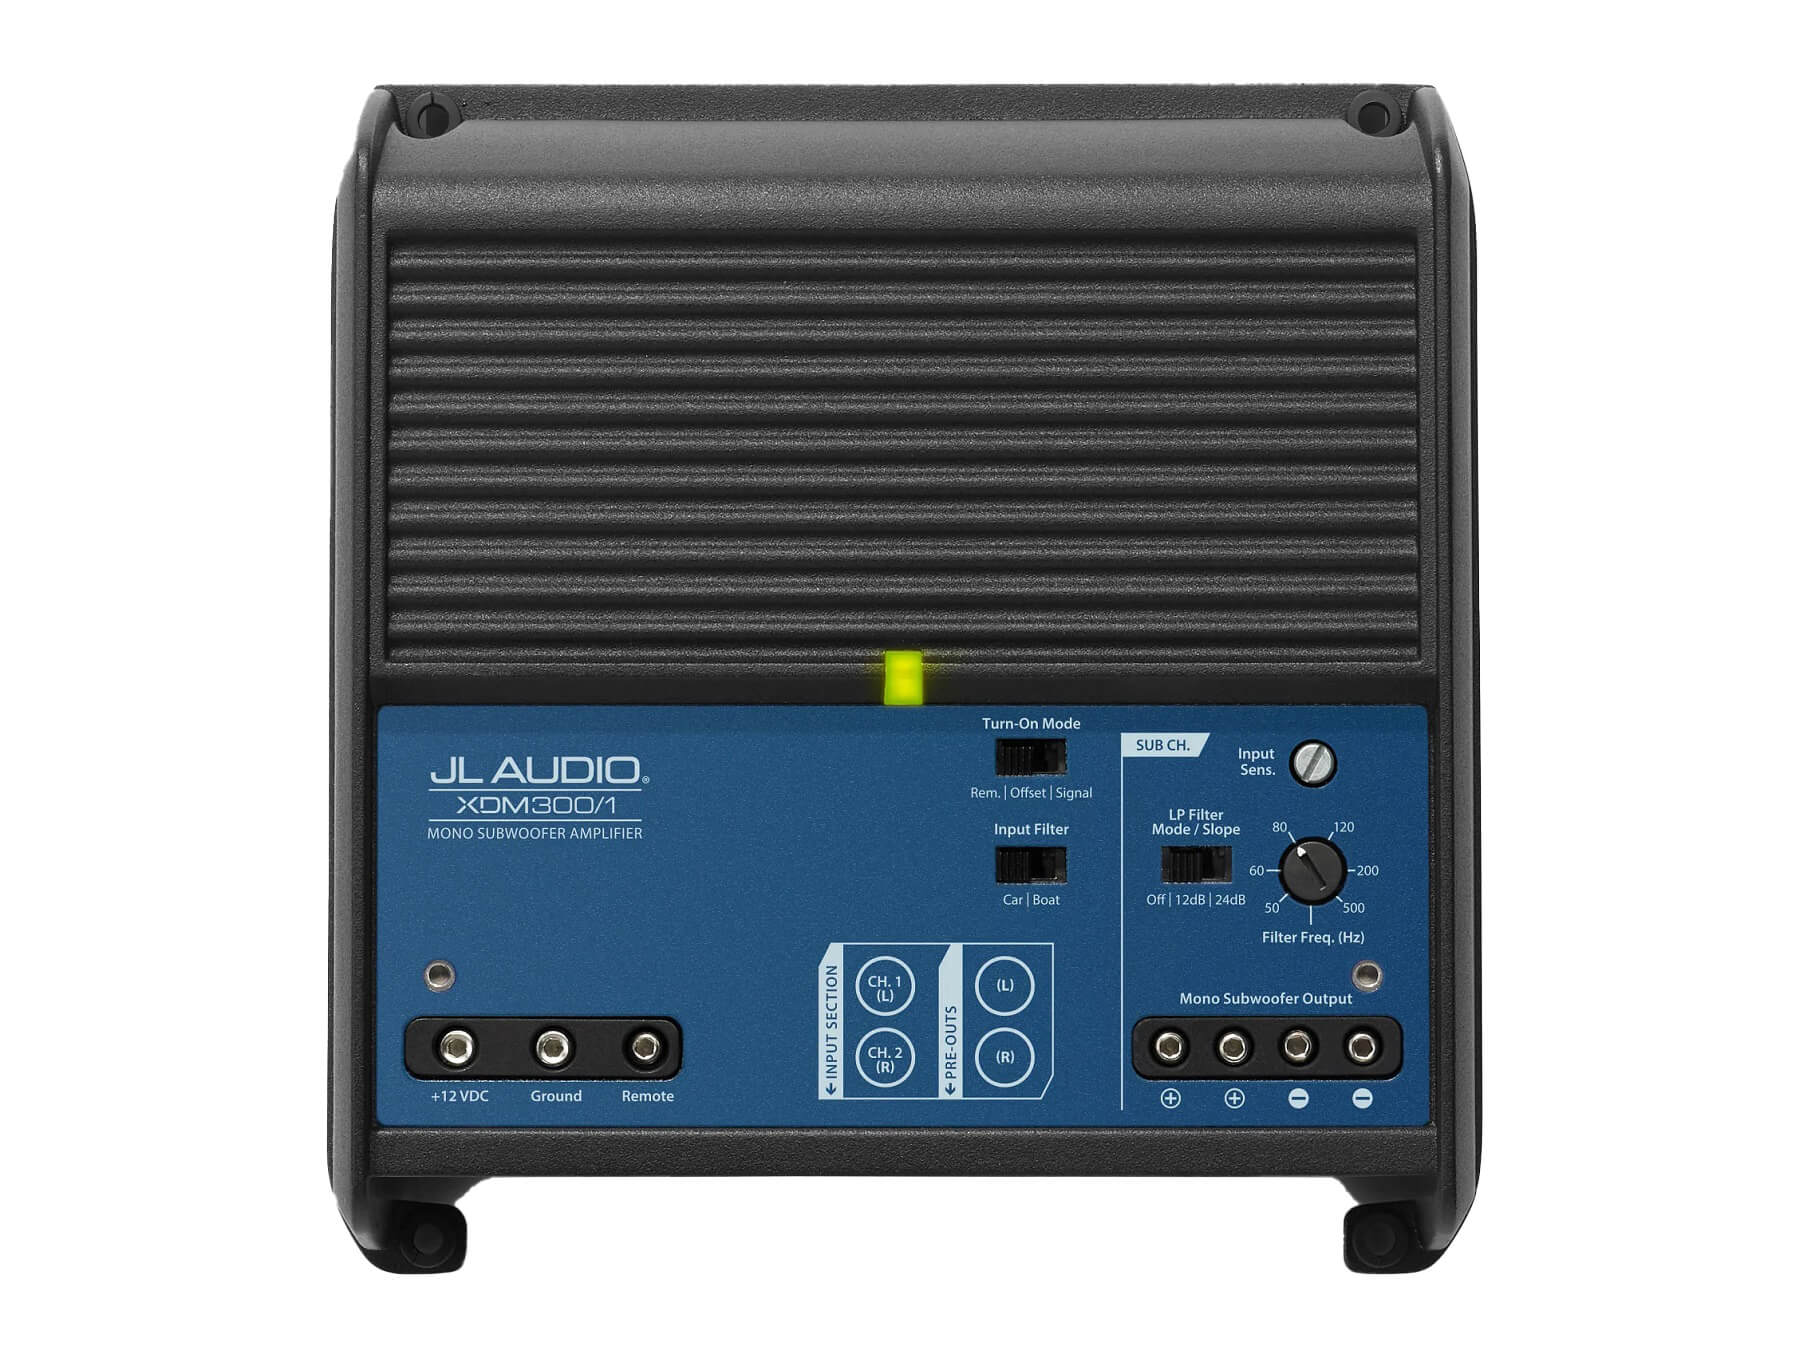 JL Audio XDM300/1 - Top / No Cover